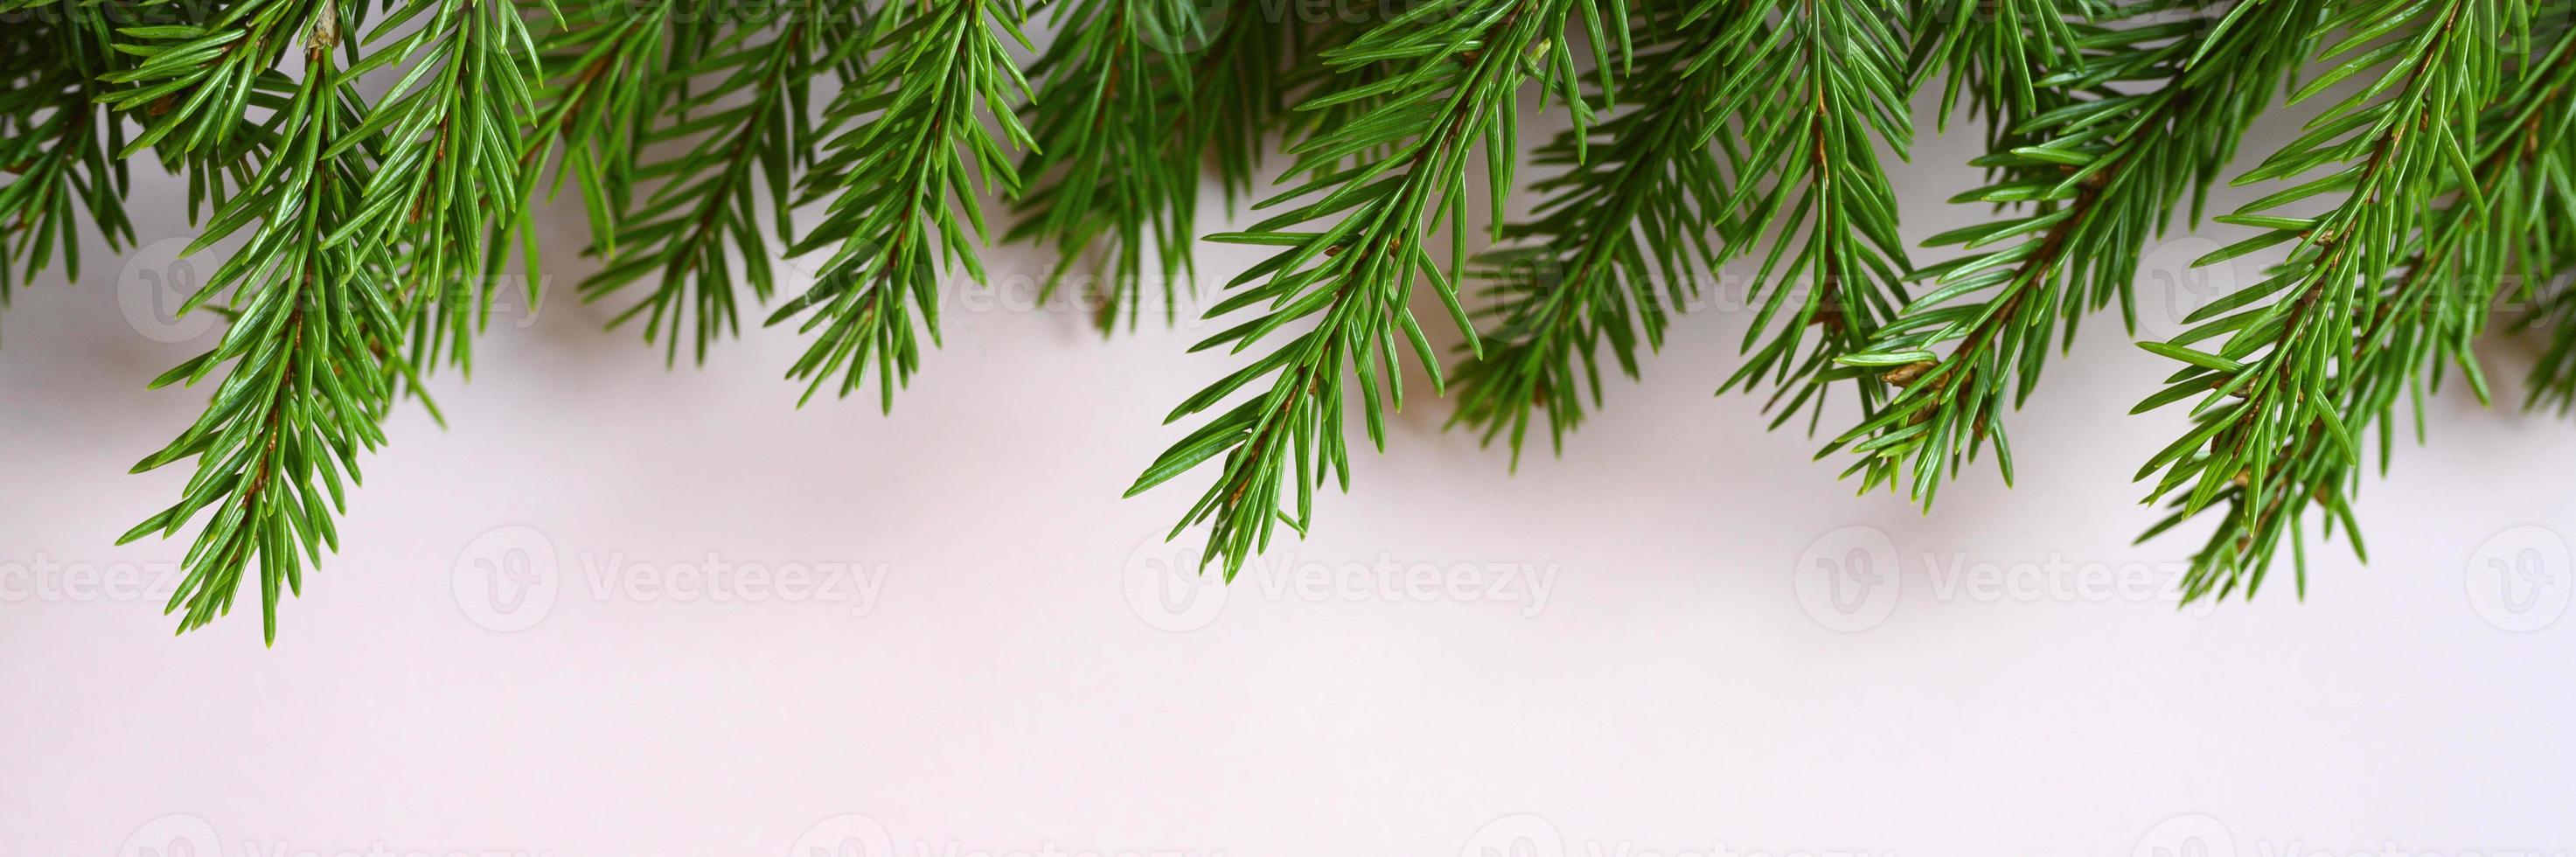 frame brunch da árvore de natal foto